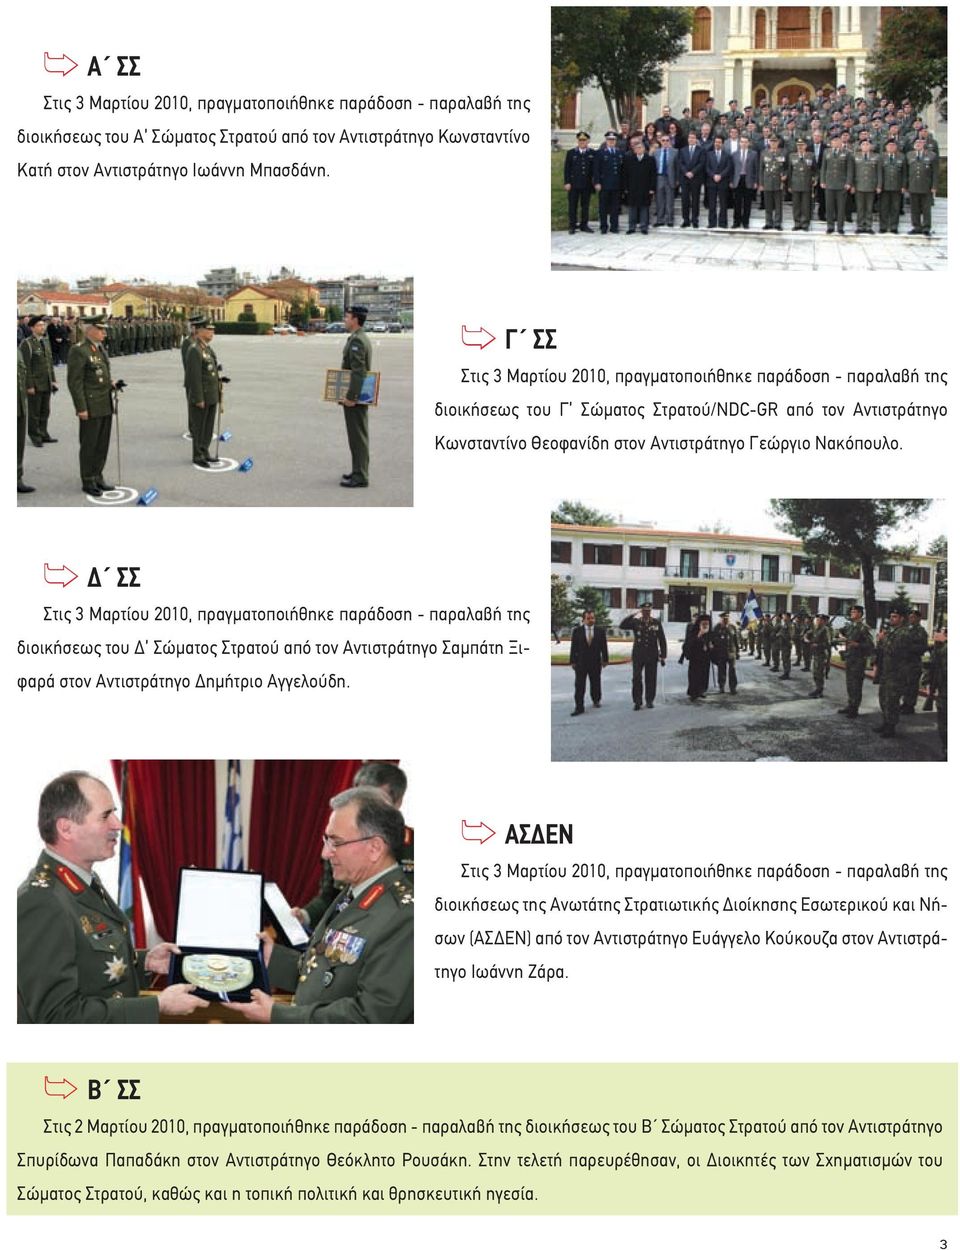 ΣΣ Στις 3 Μαρτίου 2010, πραγµατοποιήθηκε παράδοση - παραλαβή της διοικήσεως του Σώµατος Στρατού από τον Αντιστράτηγο Σαµπάτη Ξιφαρά στον Αντιστράτηγο ηµήτριο Αγγελούδη.